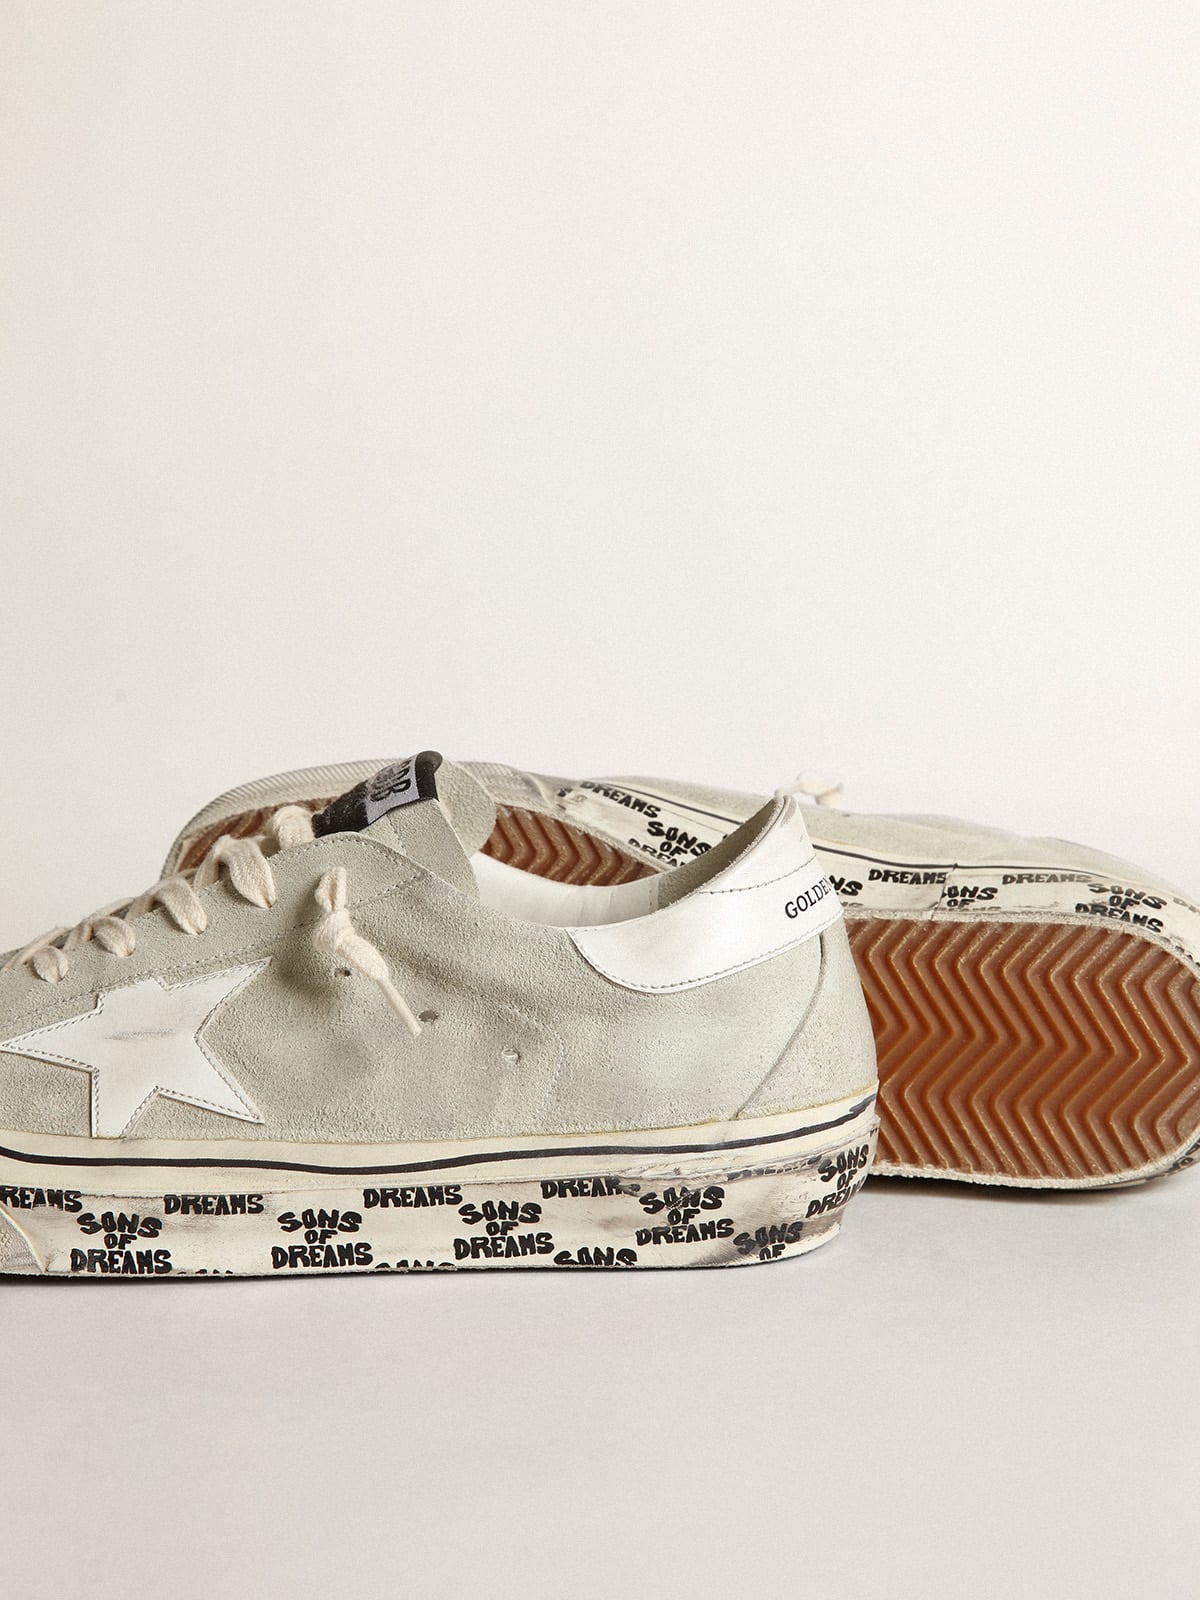 Golden Goose - Sneaker Super-Star in suede color grigio ghiaccio con stella e talloncino in pelle bianca in 